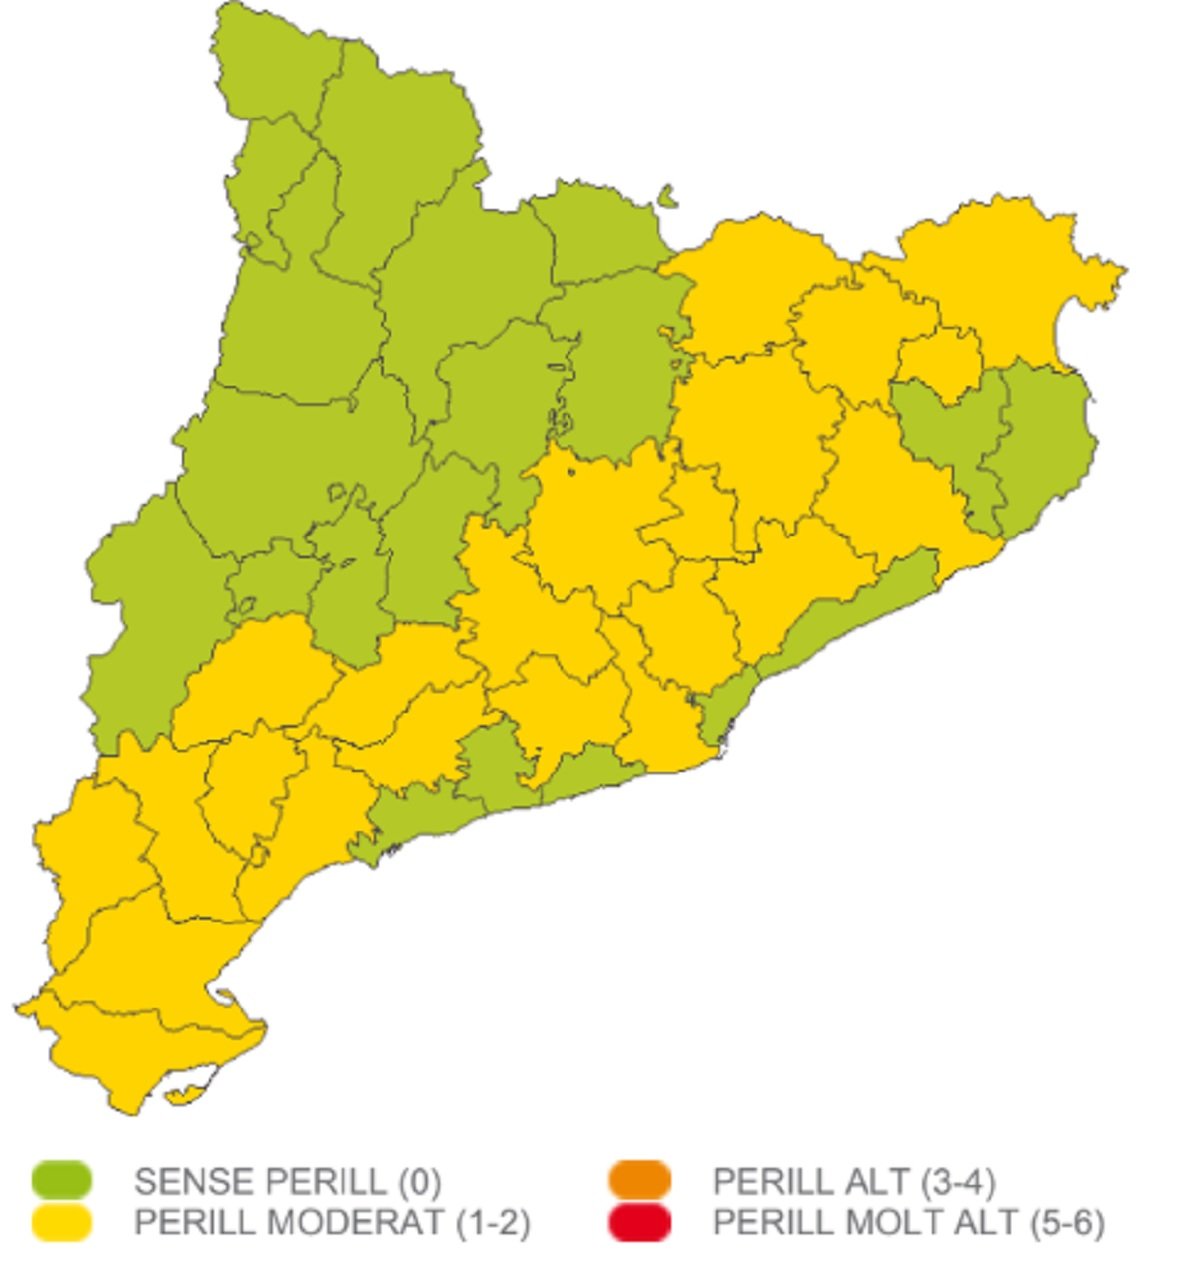 Mapa perill tempestes Catalunya divendres, 9 de juny / Meteocat